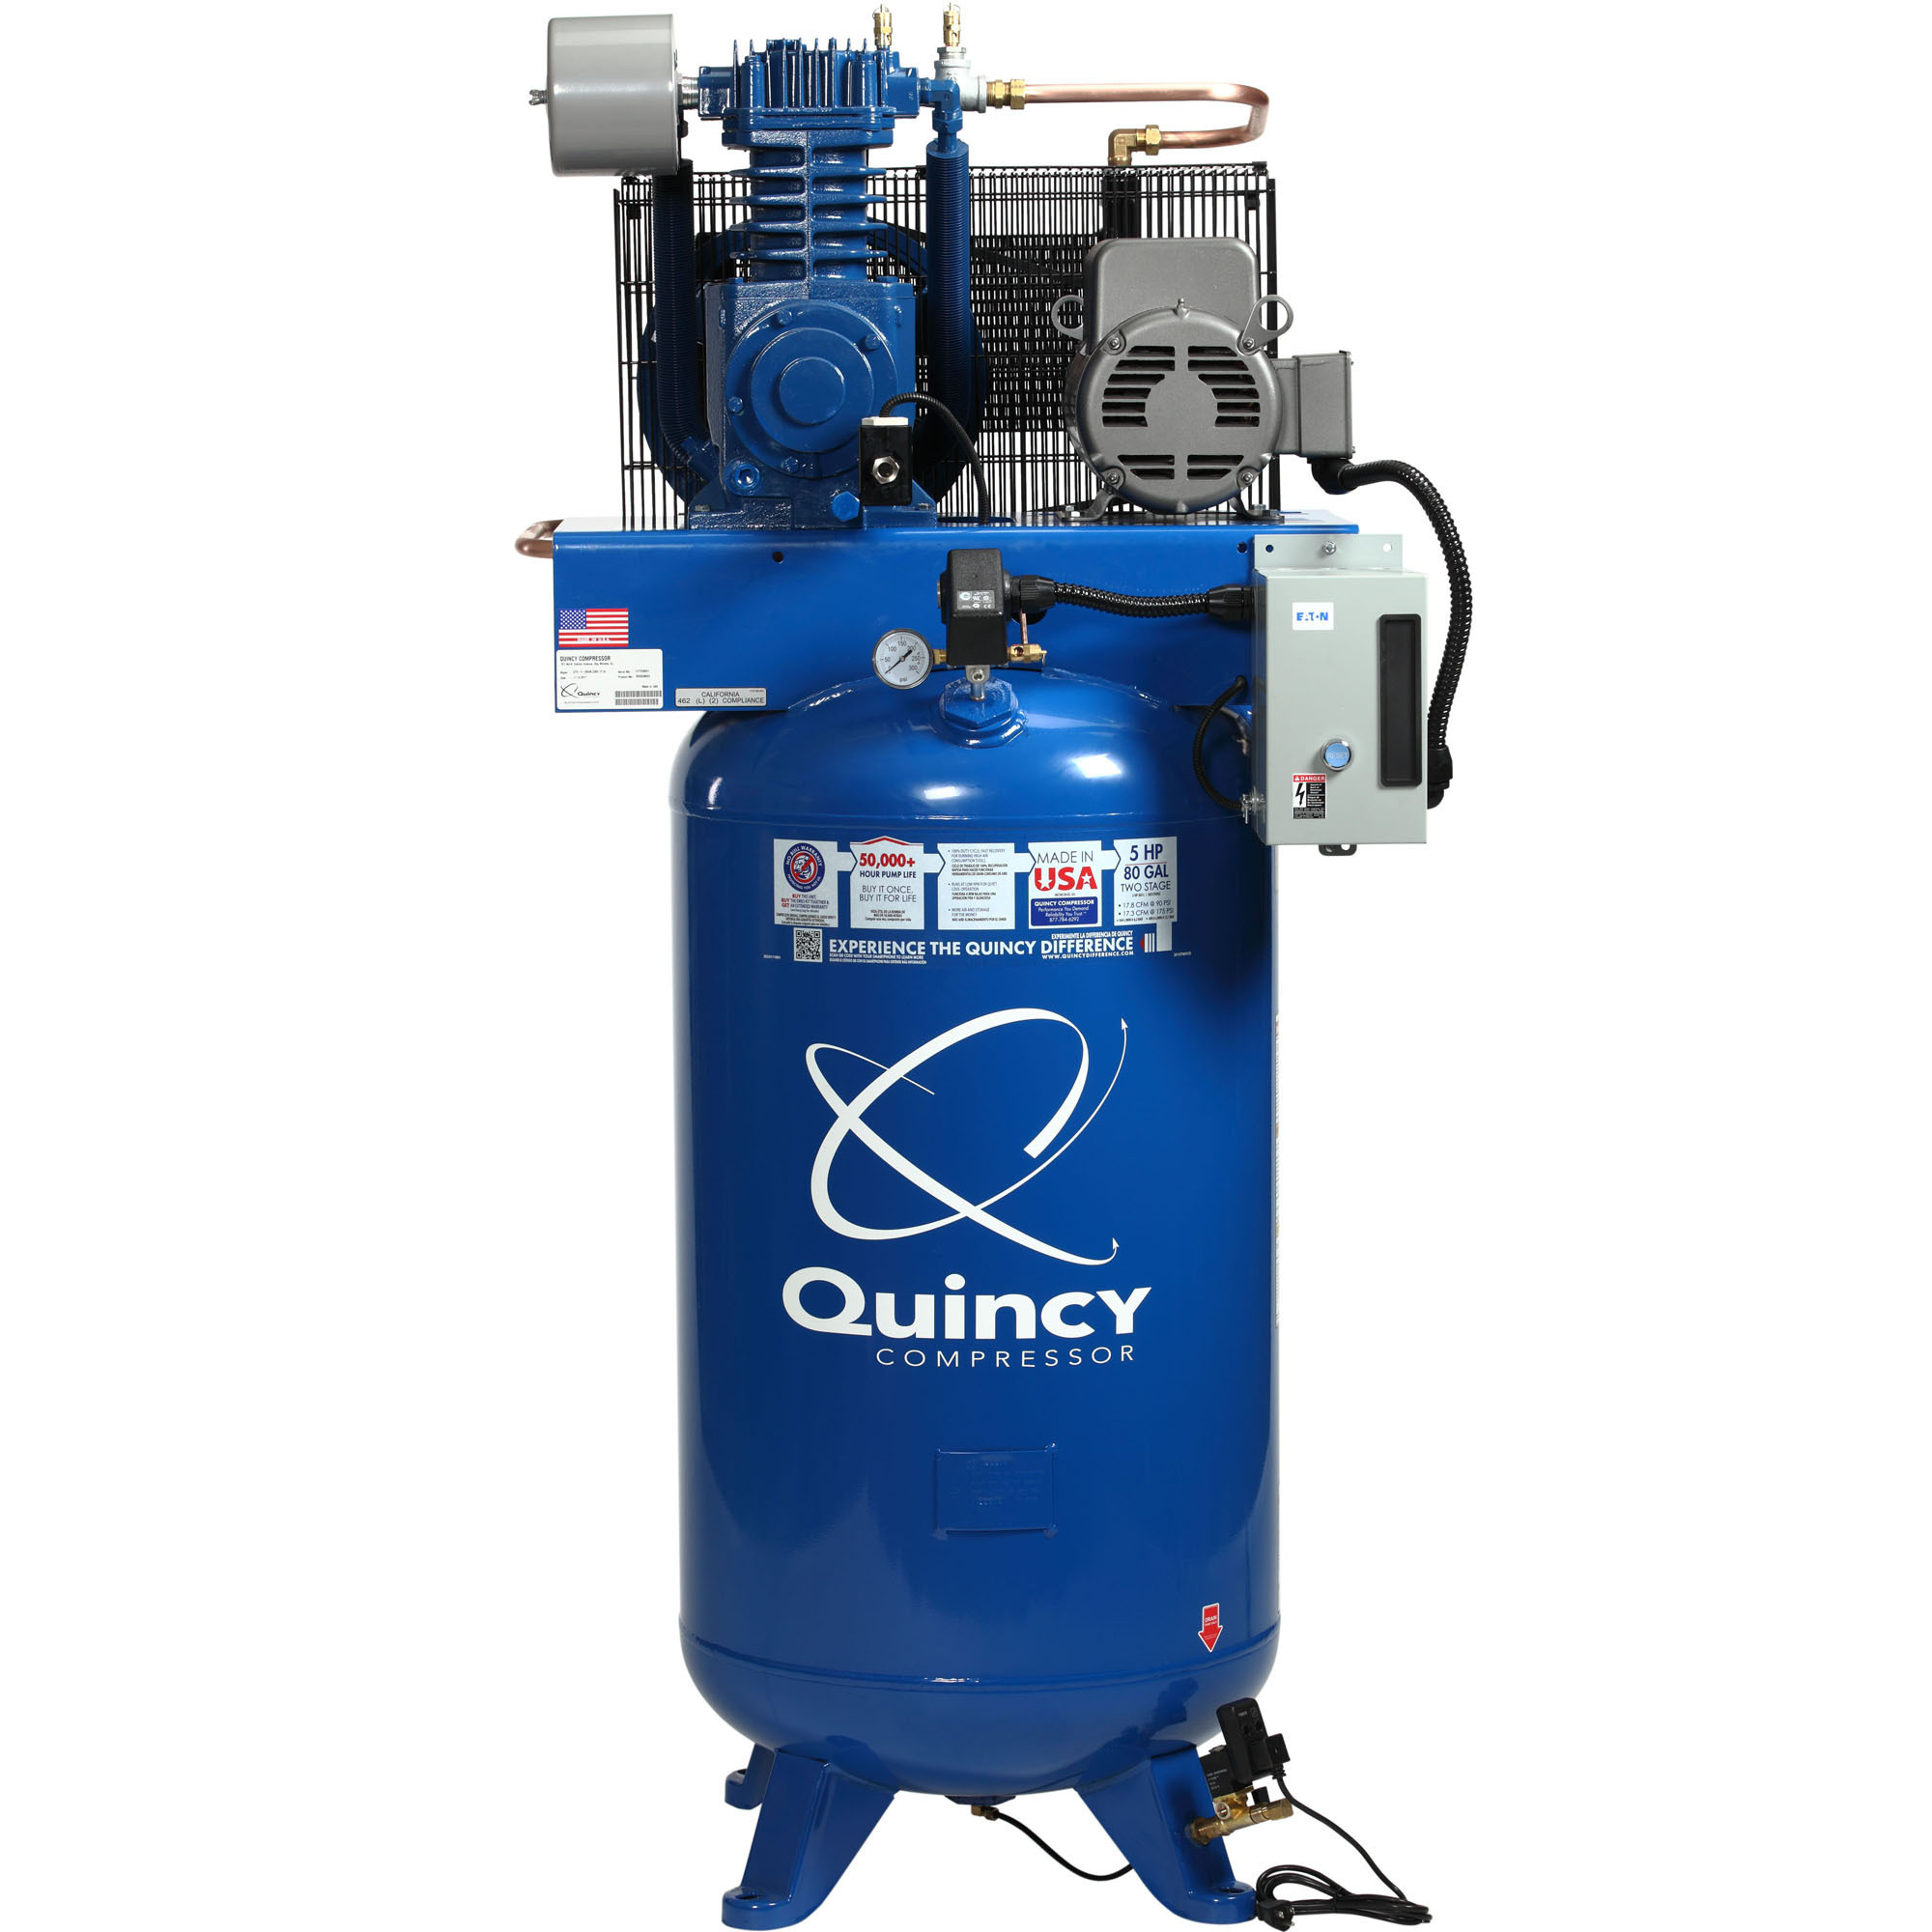 Quincy Compressor 2020040712